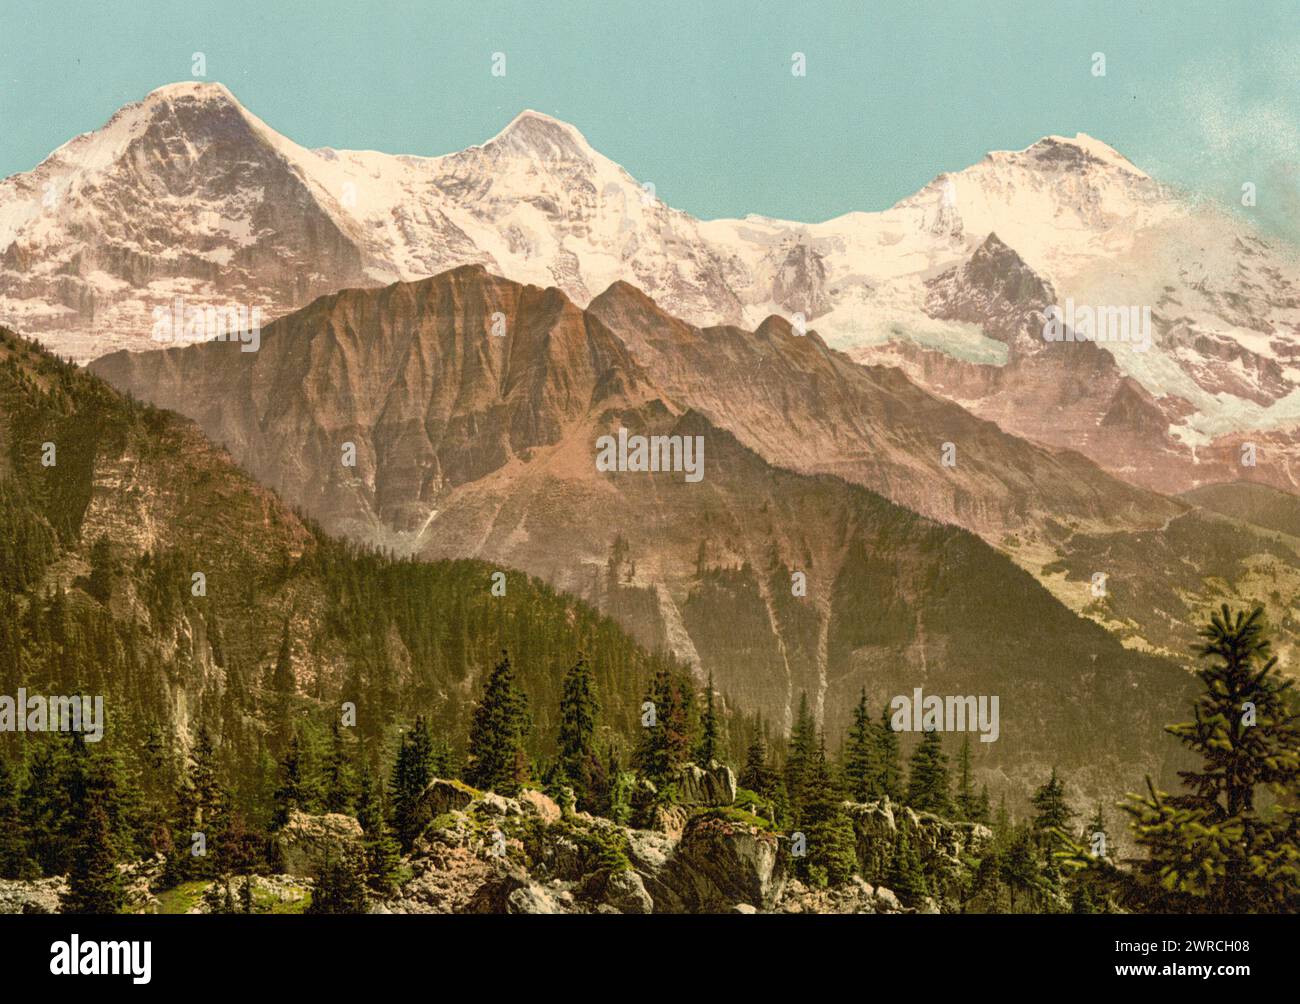 Schynige Platte, Eiger, Monch e Jungfrau, Oberland Bernese, Svizzera, tra circa 1890 e ca. 1900., colore, 1890-1900 Foto Stock